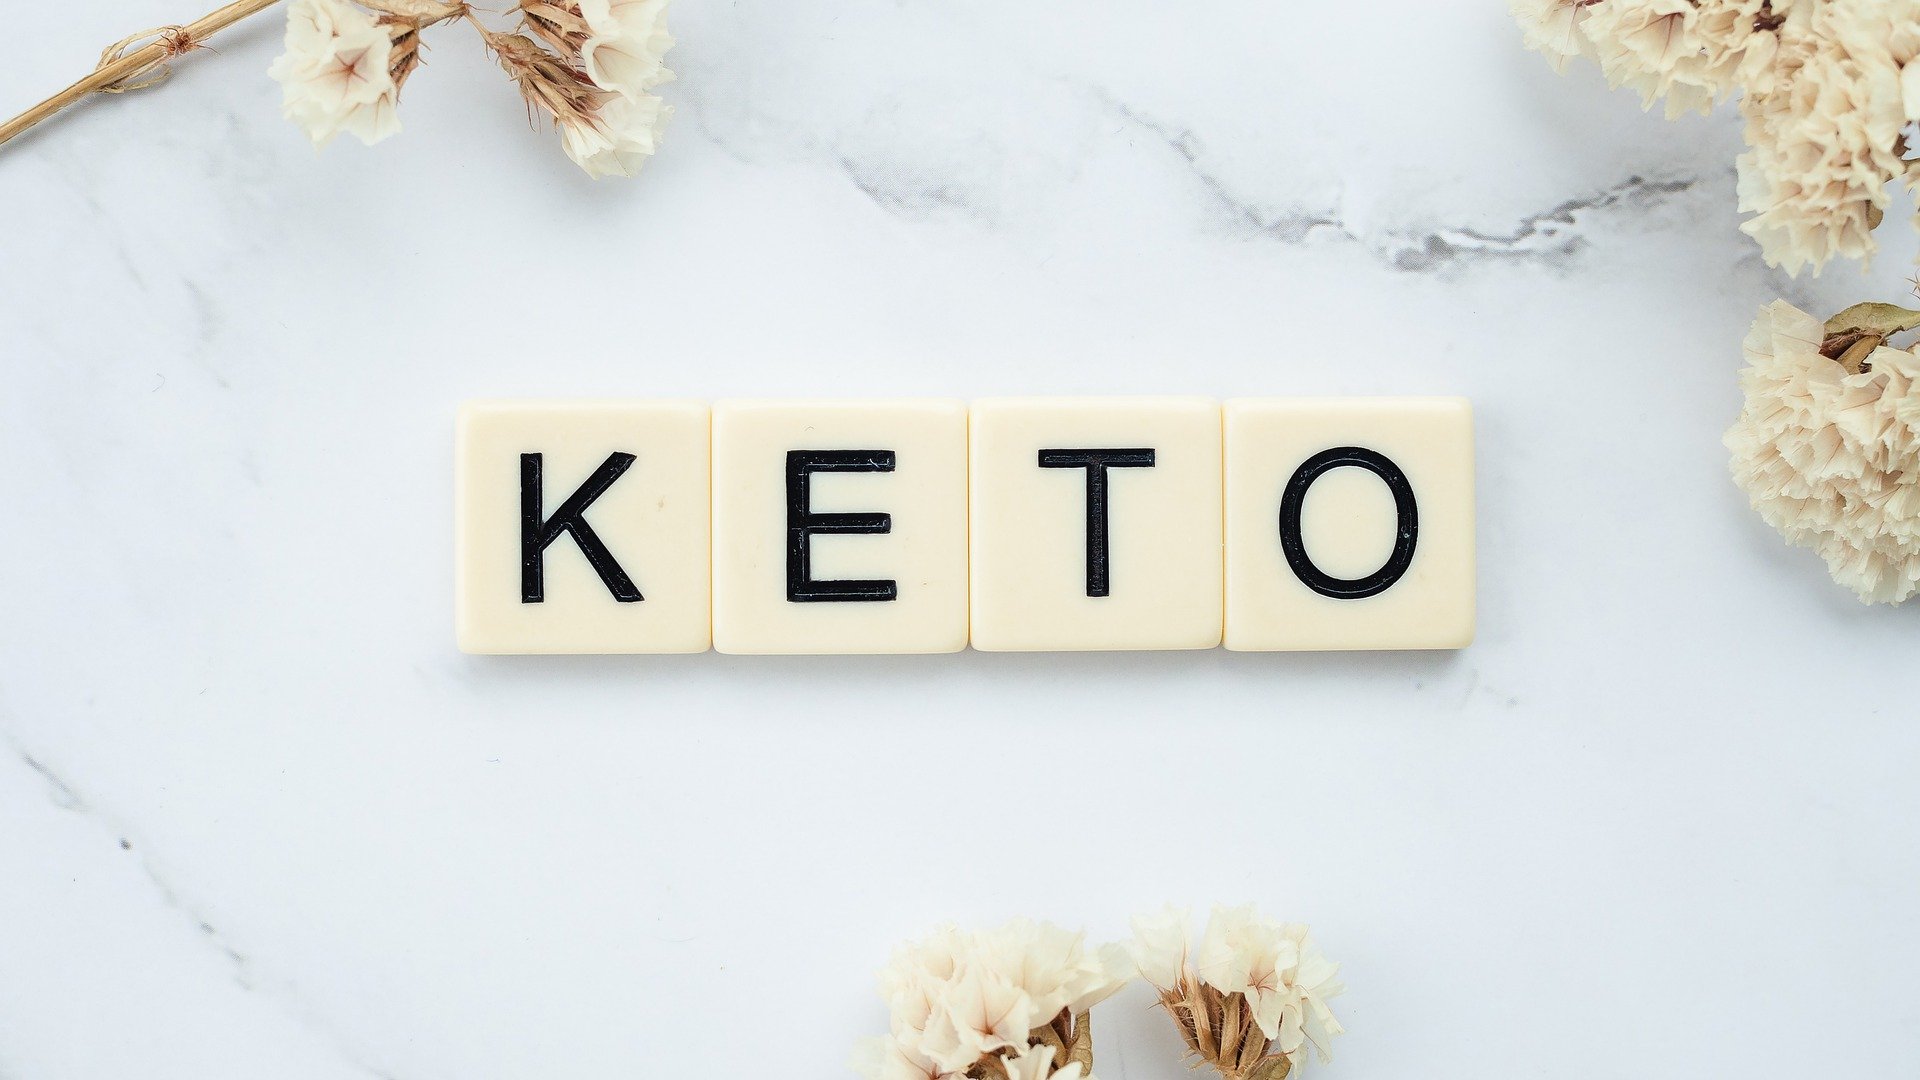 ผู้ป่วยไขมันในเลือดสูง กินคีโต (Ketogenic Diet) ได้หรือไม่?